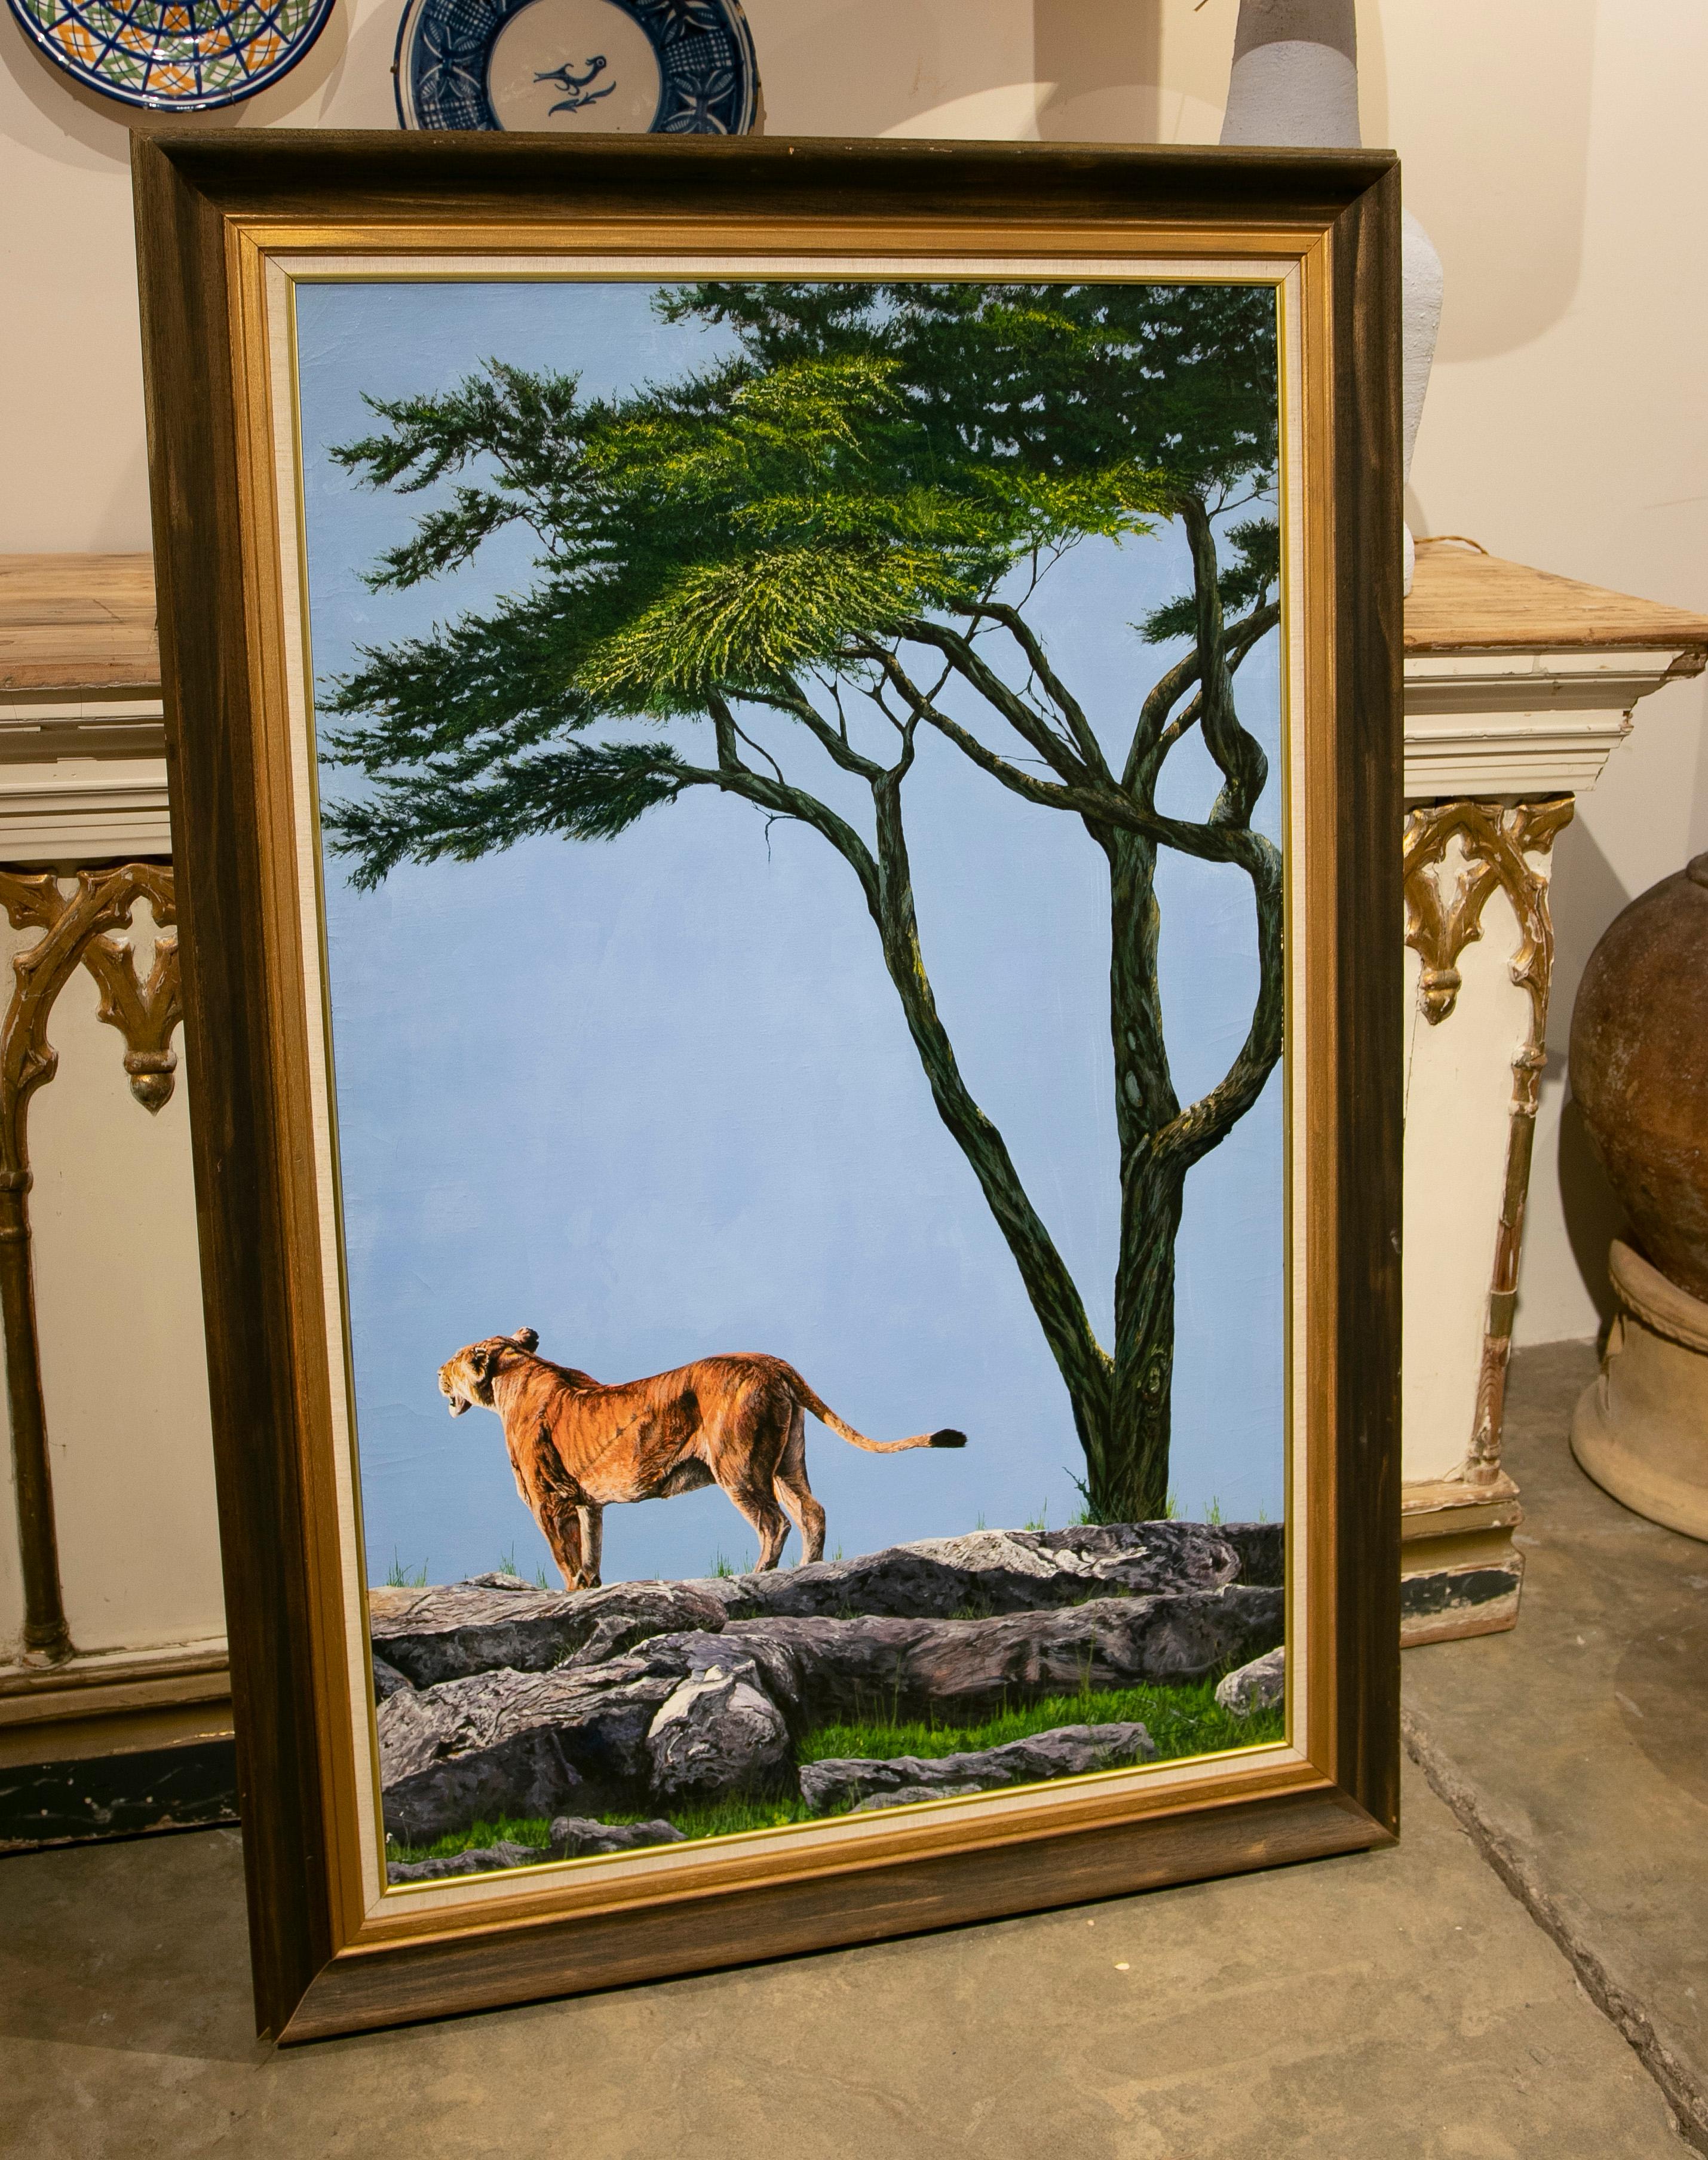 Bild von Tiger auf Berghang mit Baum gemalt in Öl auf Leinwand von 1988
Maße mit Rahmen: 146x96x4cm.